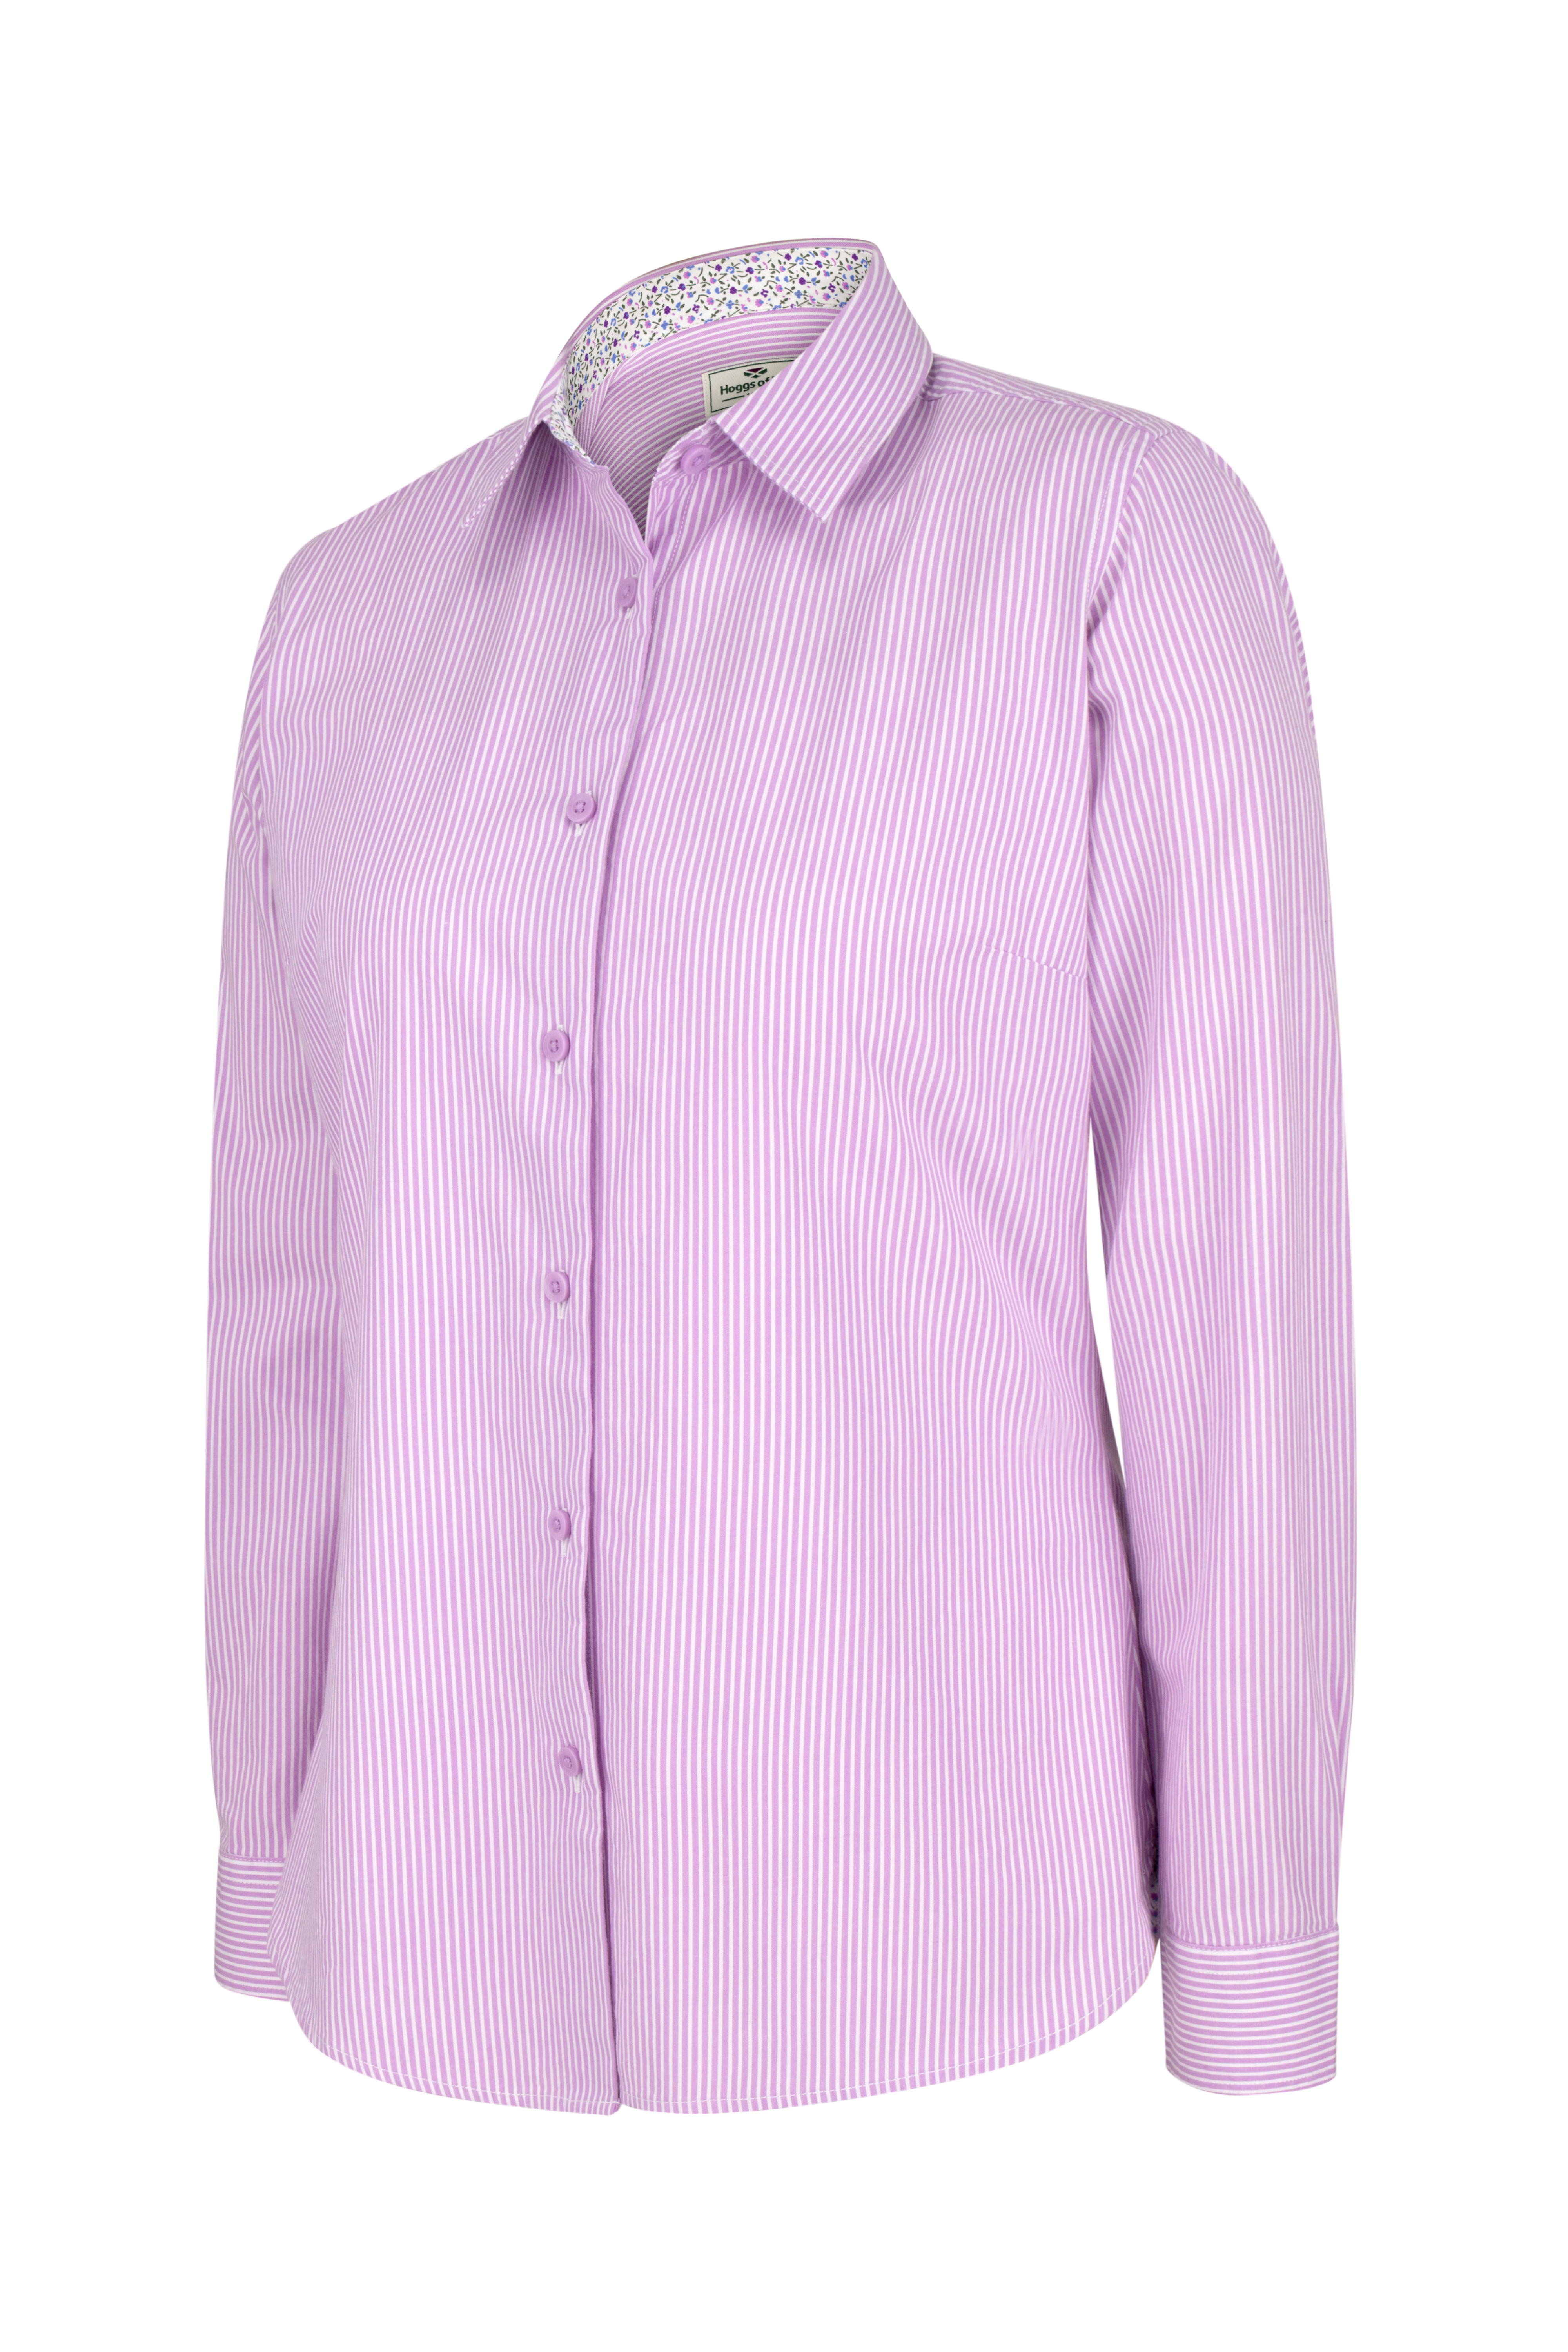 Hoggs of Fife Bonnie Il Ladies Cotton Shirt - Lavendar